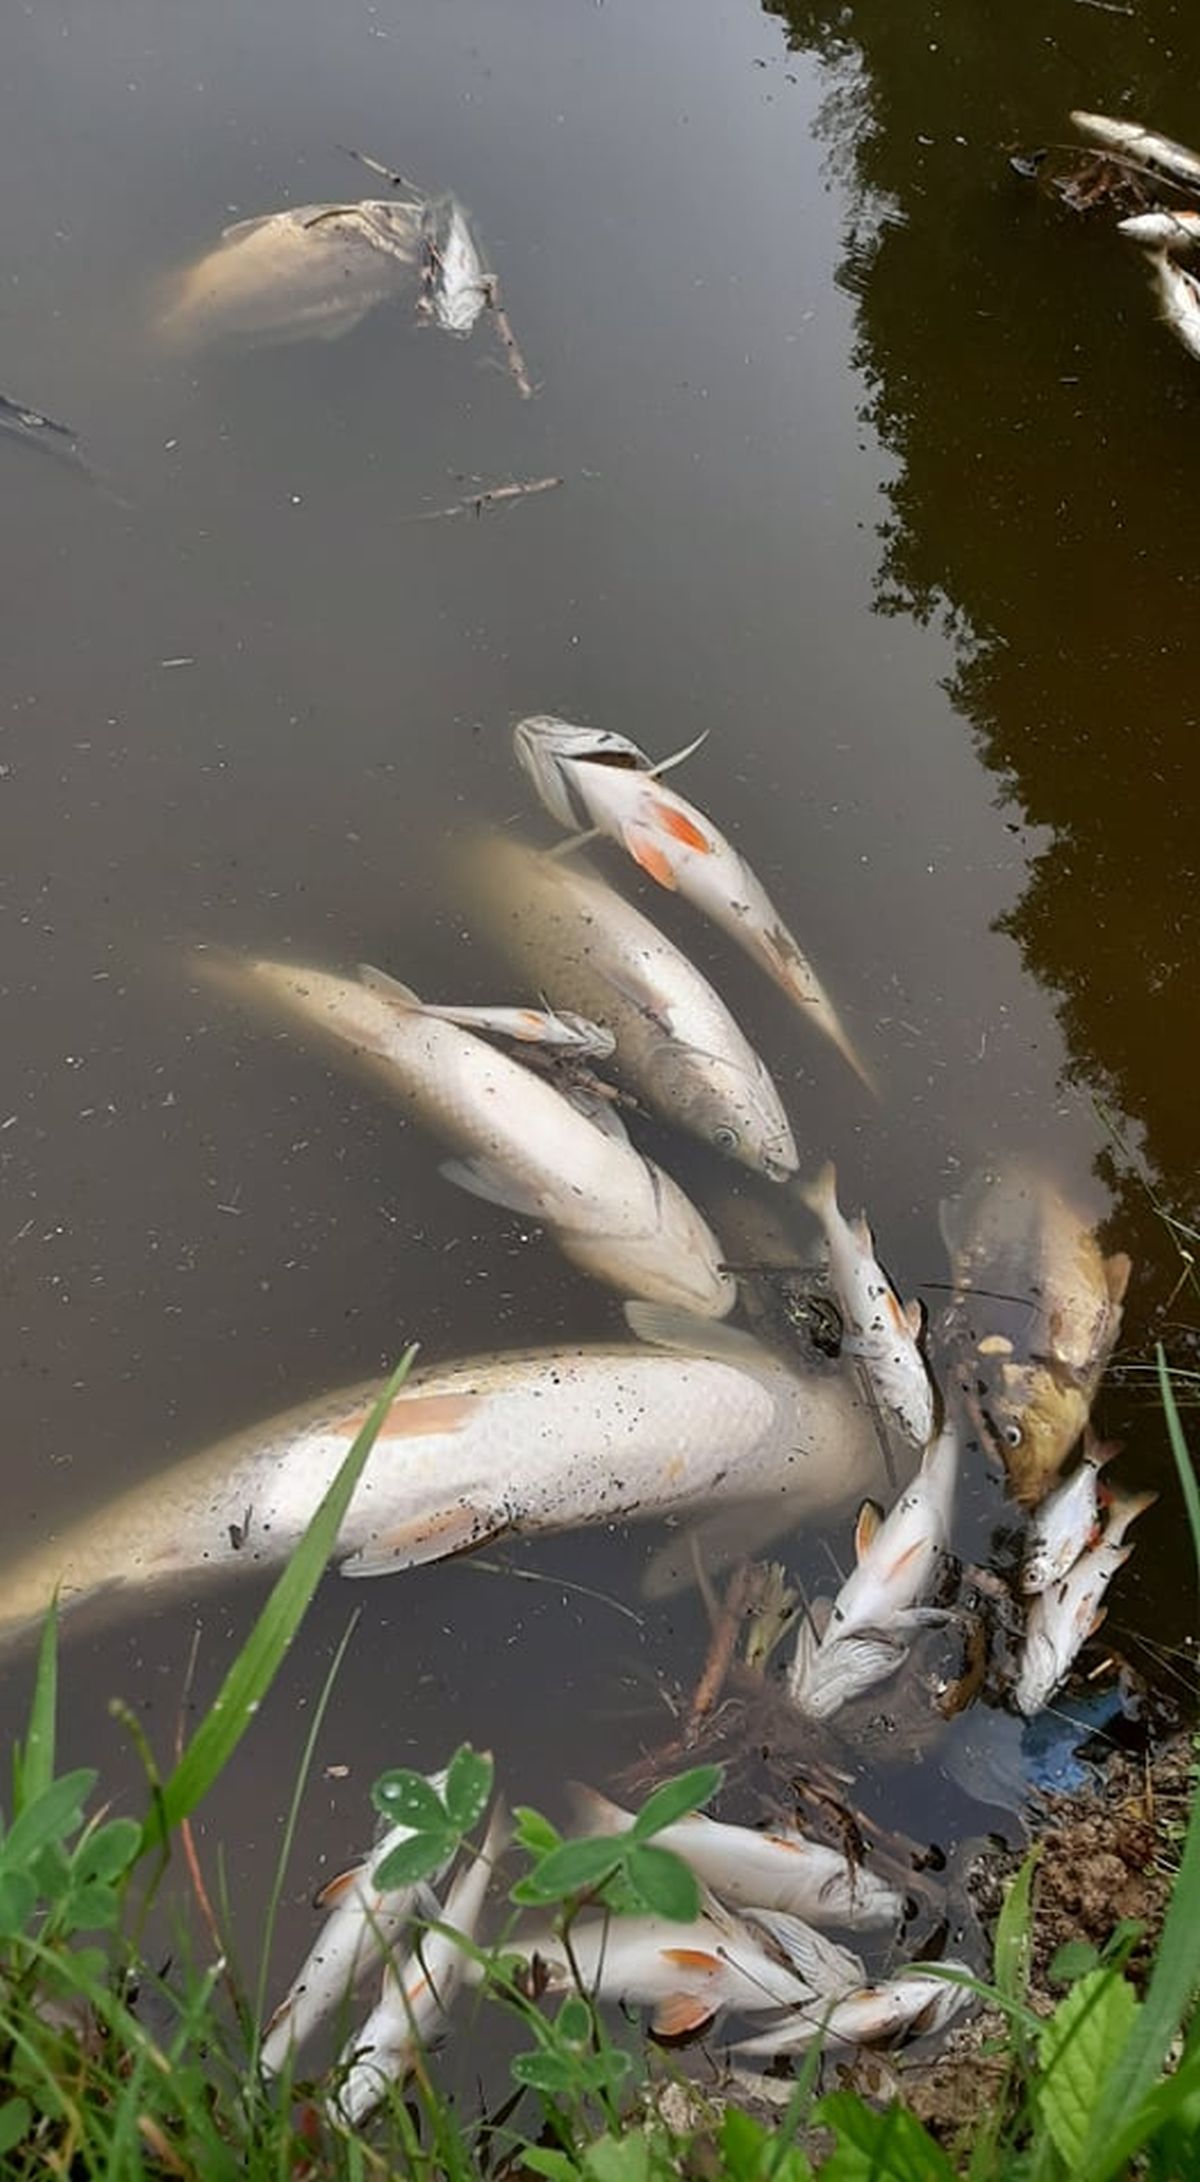 Ryby na łowisku koło Lublina padają jedna za drugą. Wędkarze podejrzewają, że zostały otrute (zdjęcia)